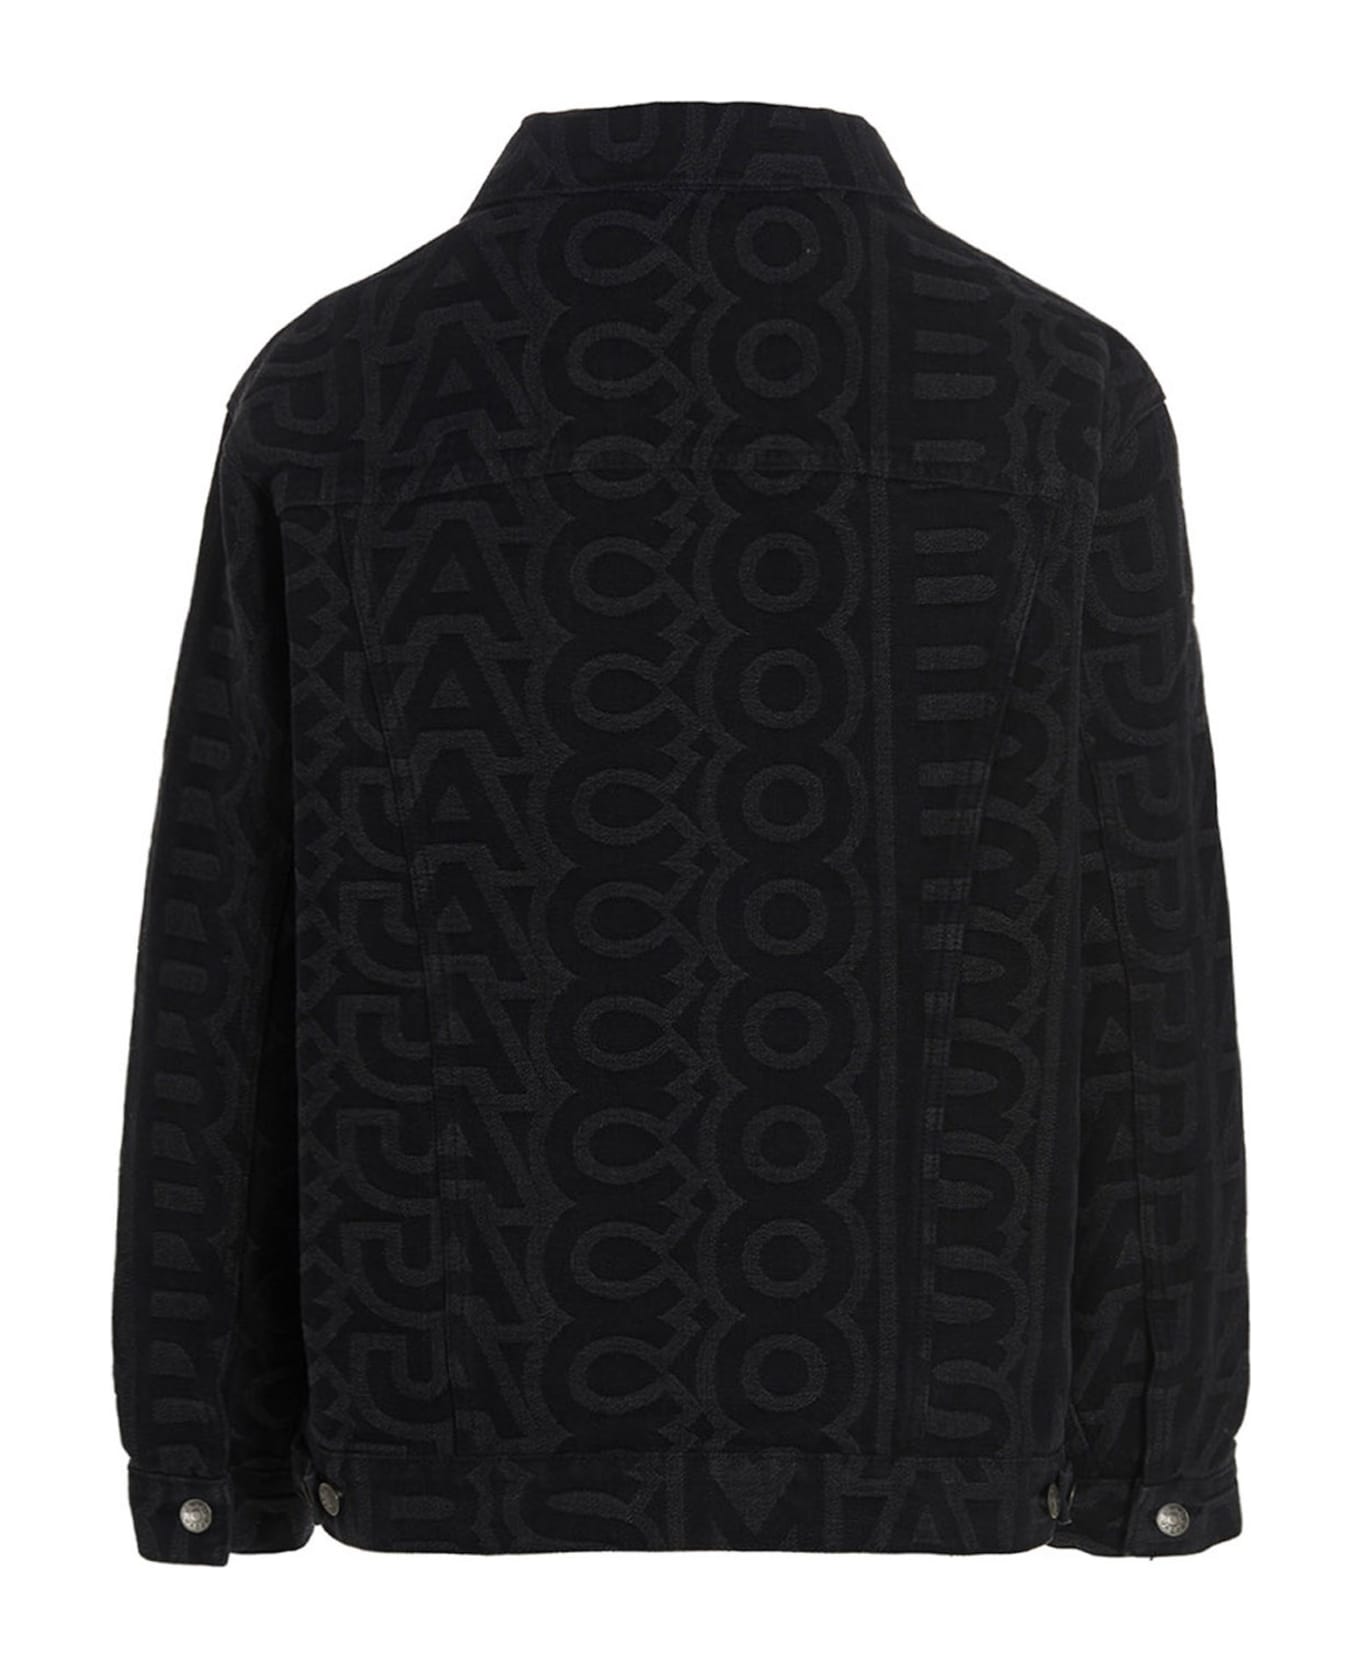 Marc Jacobs Embroidered Denim Jacket - Black シャツ